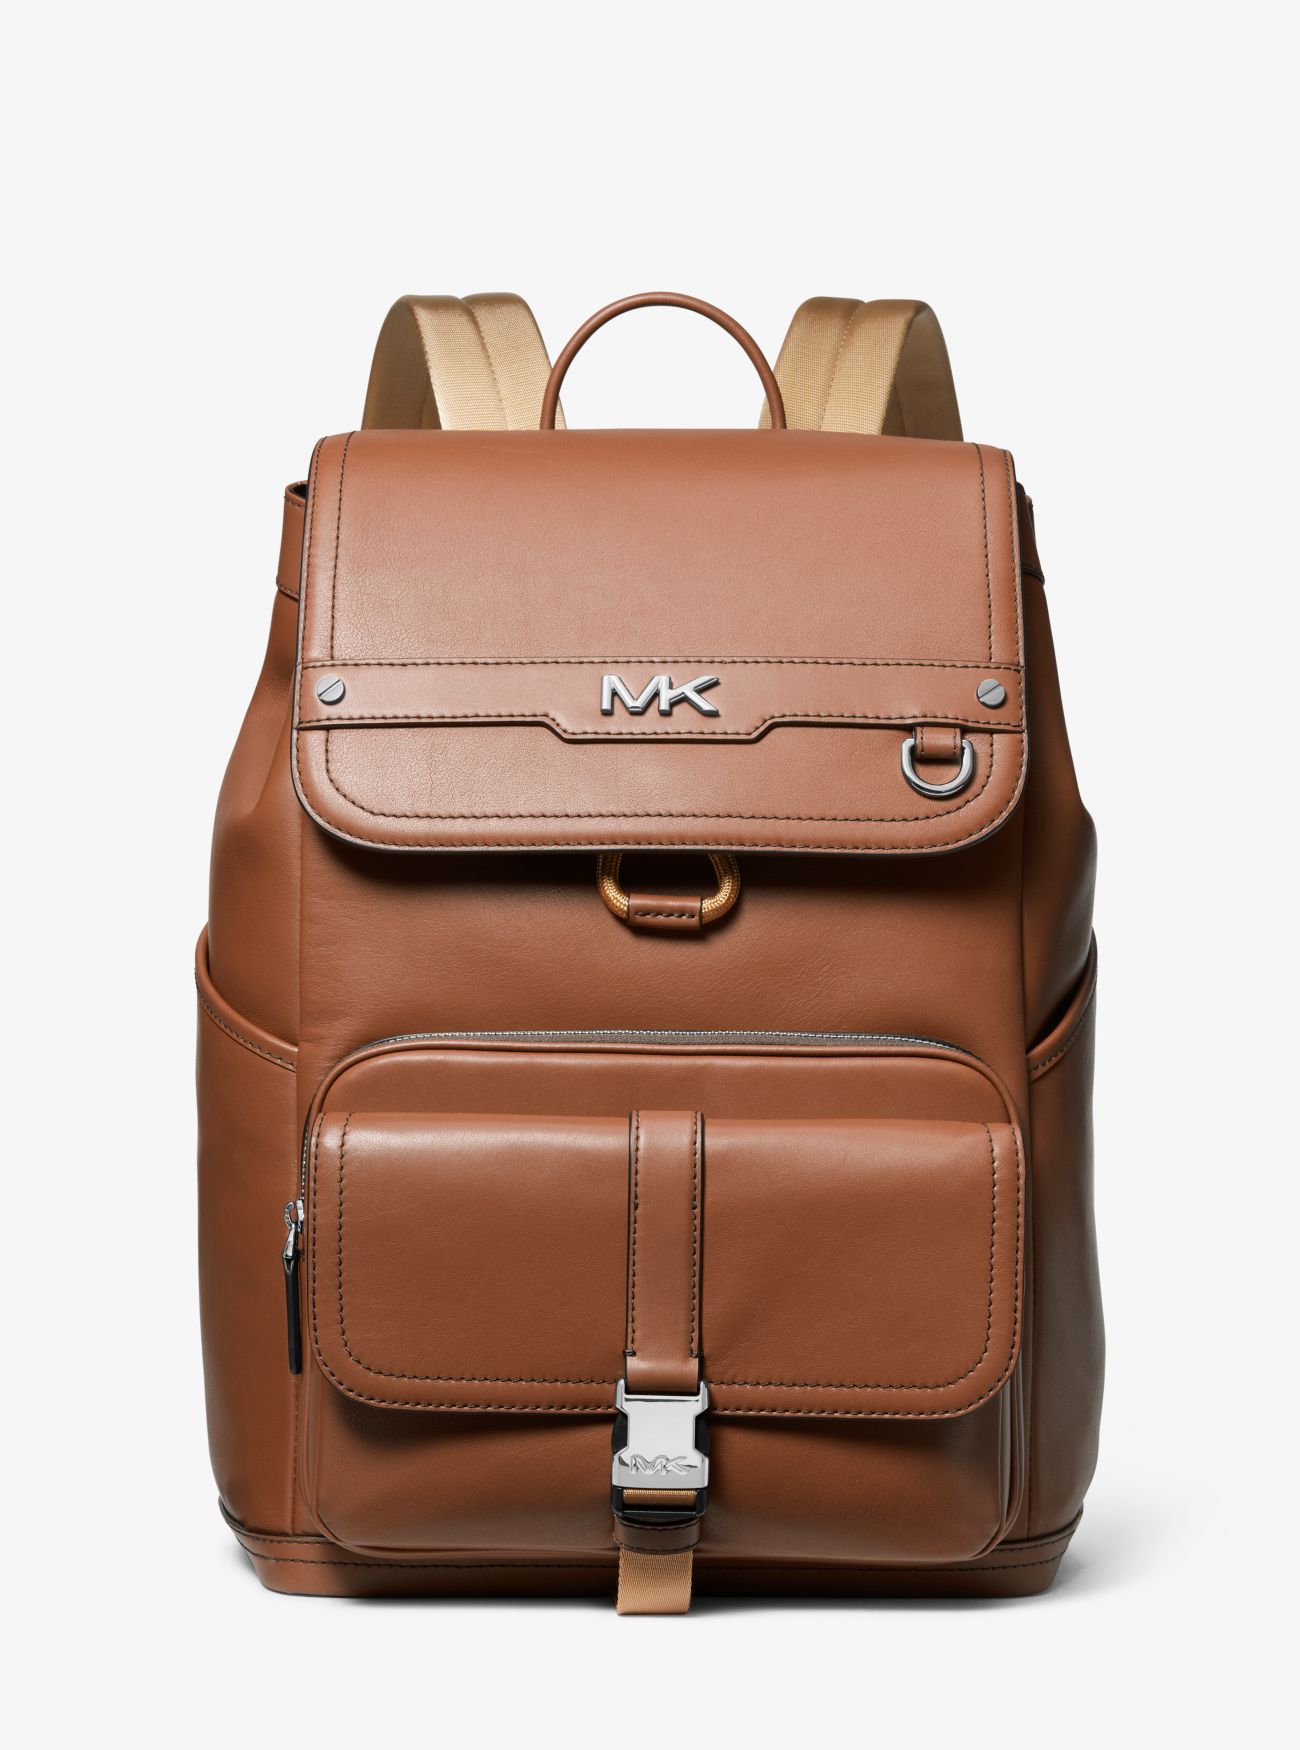 MK Varick Leather Backpack - Brown - Michael Kors